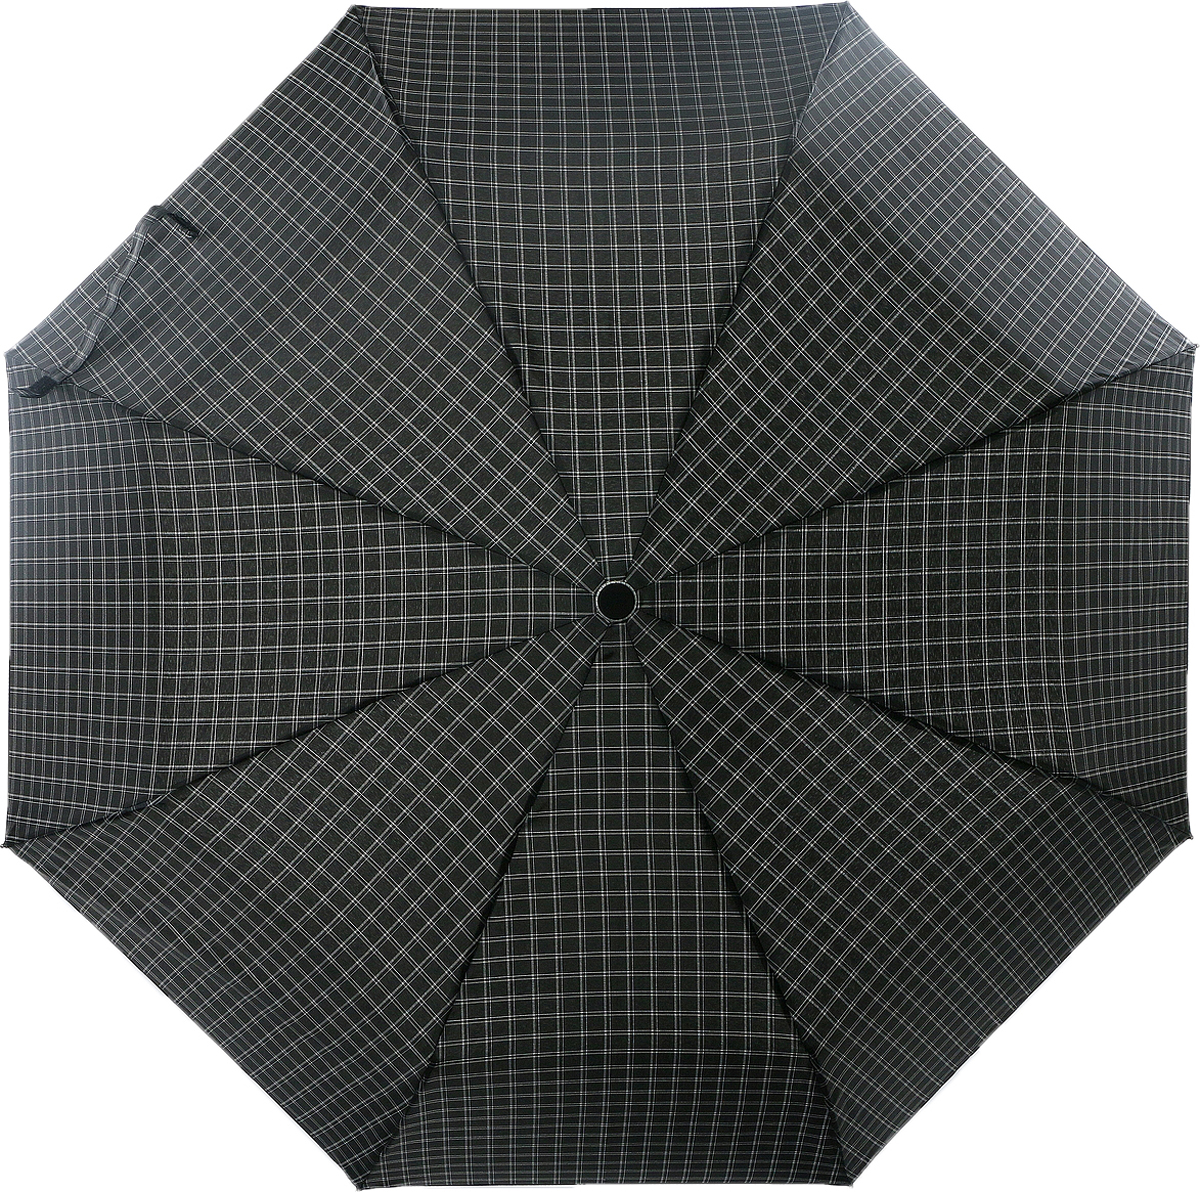 Зонт мужской Magic Rain, автомат, 3 сложения, цвет: черный, белый, серый. 7022-1703